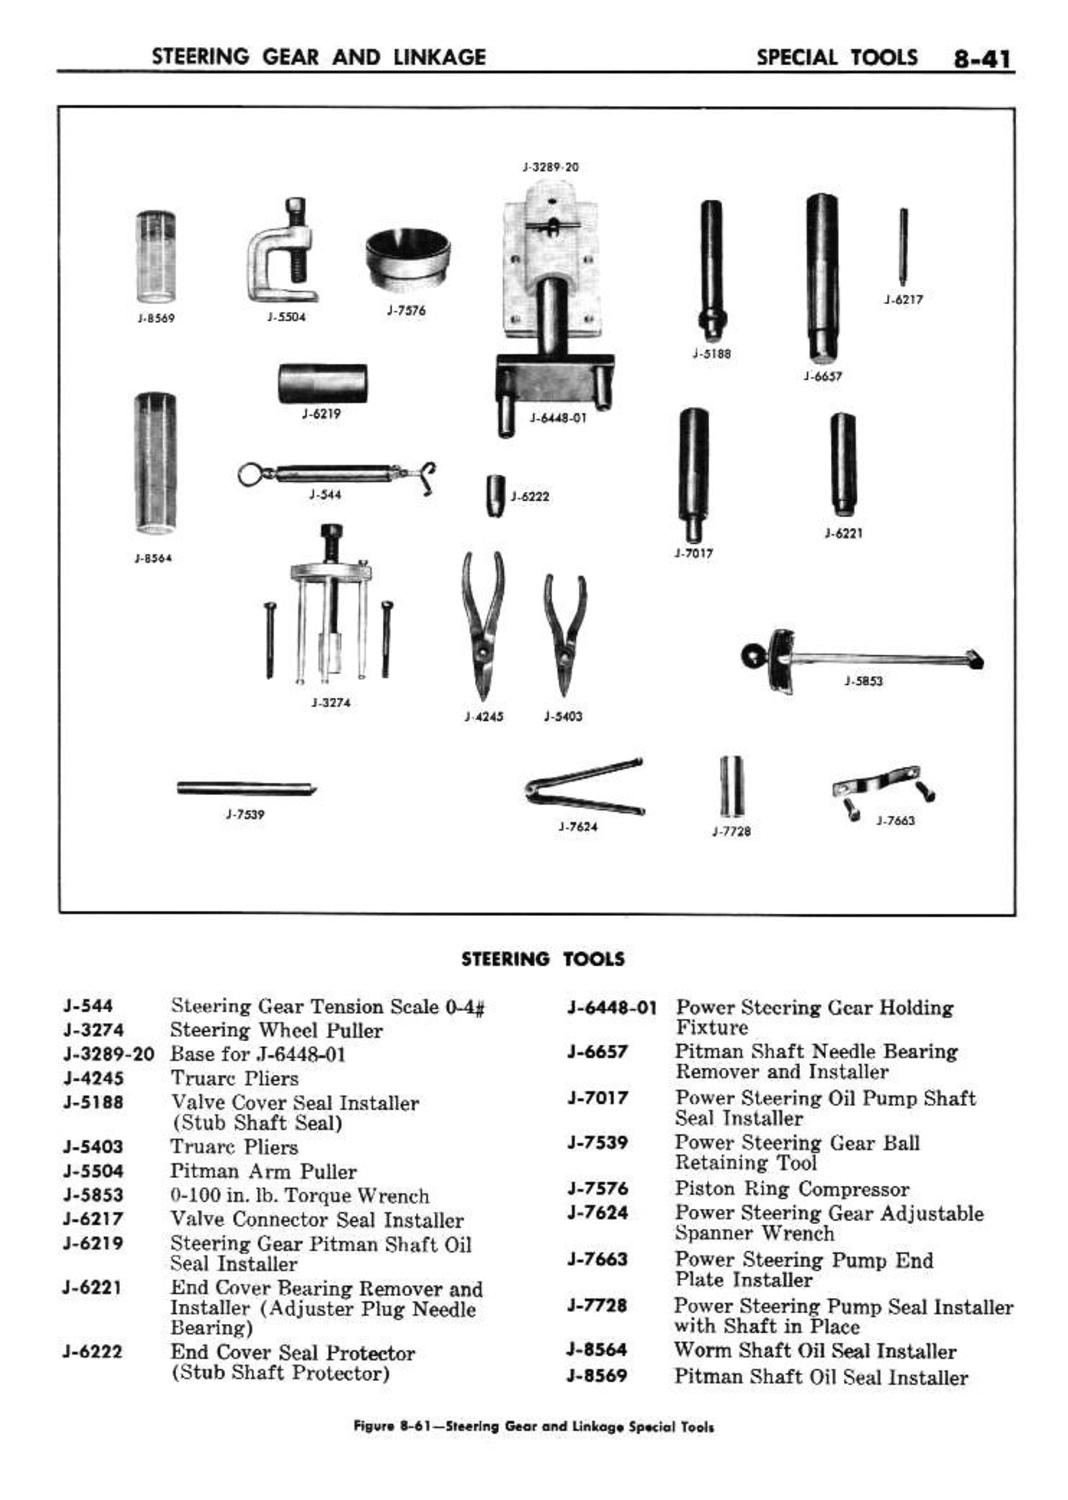 n_09 1960 Buick Shop Manual - Steering-041-041.jpg